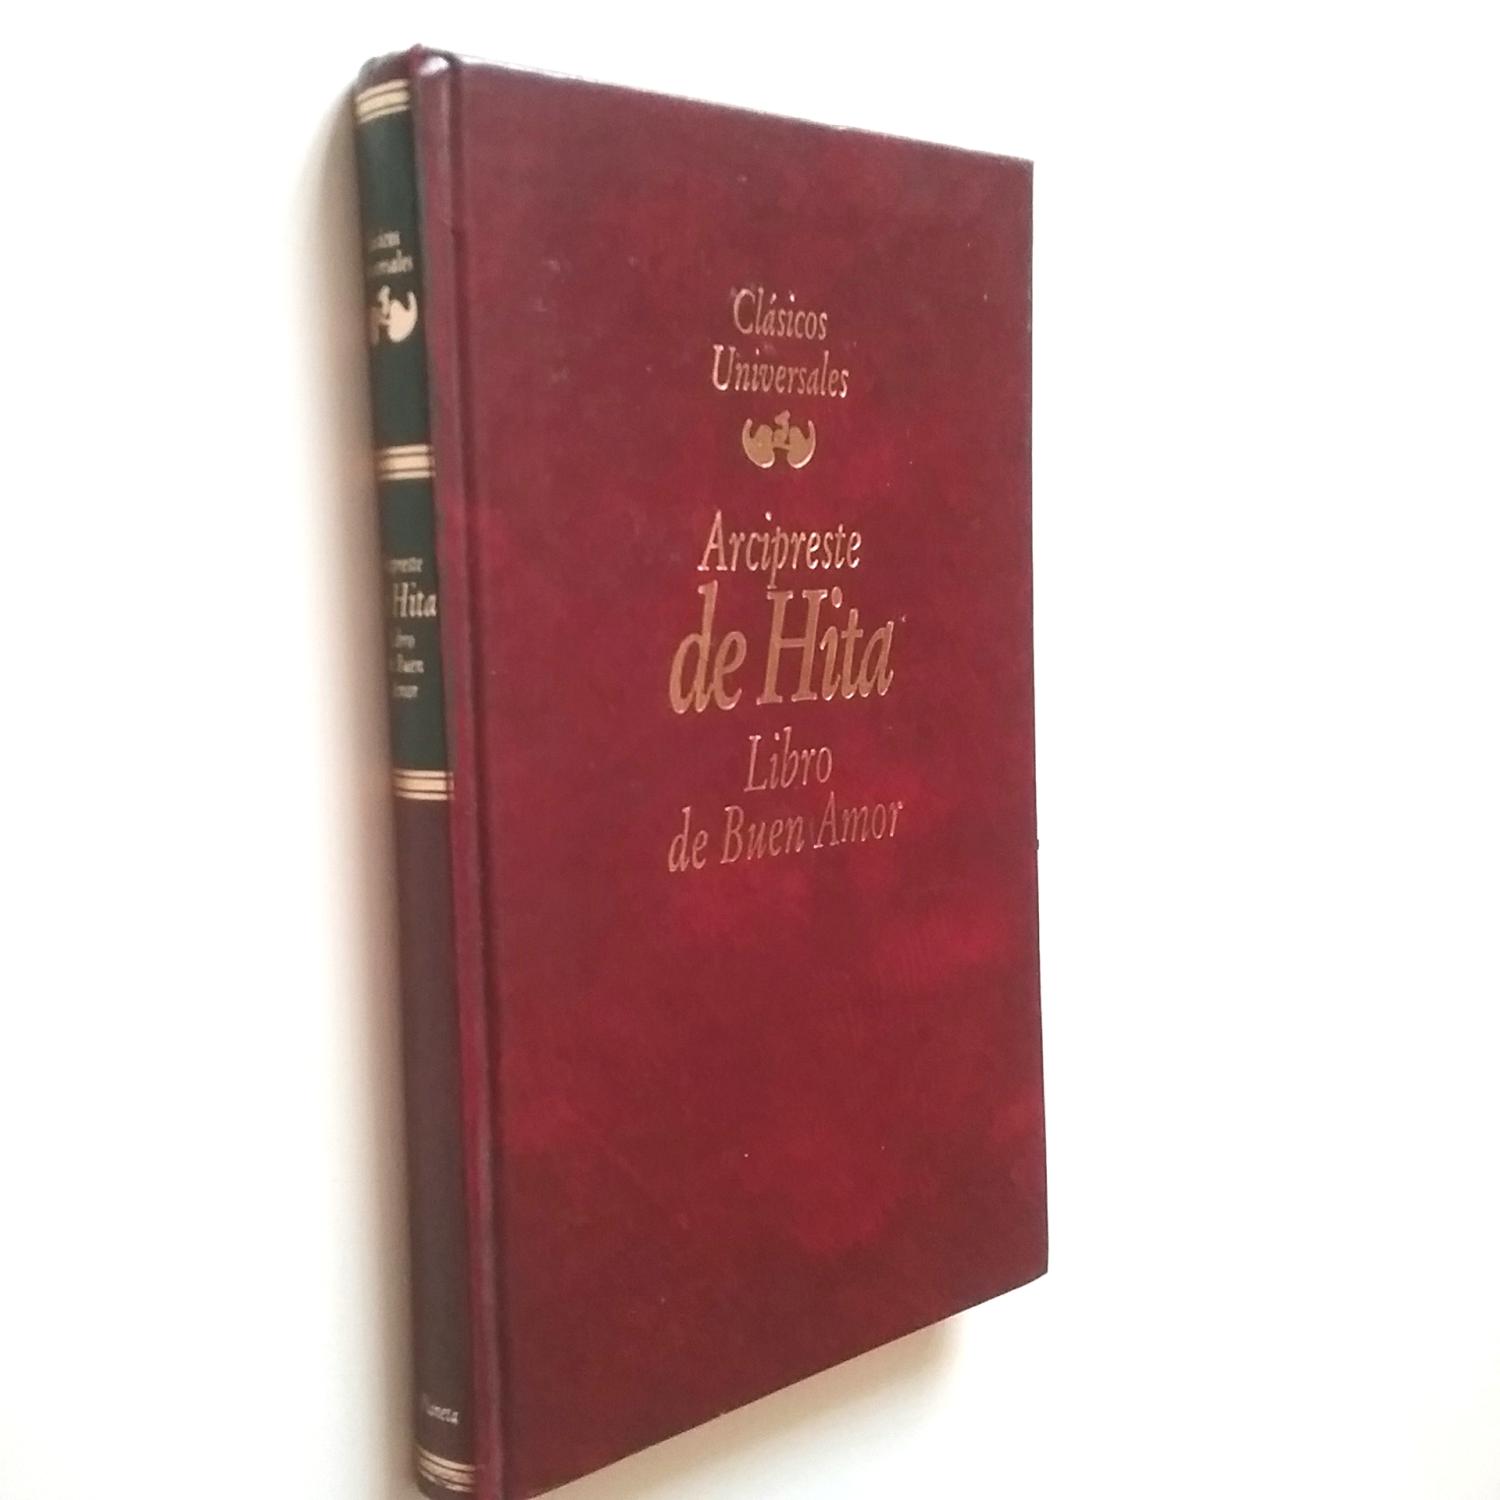 Libro de buen amor - Juan Ruiz, Arcipreste de Hita (Edición de Alberto Blecua)